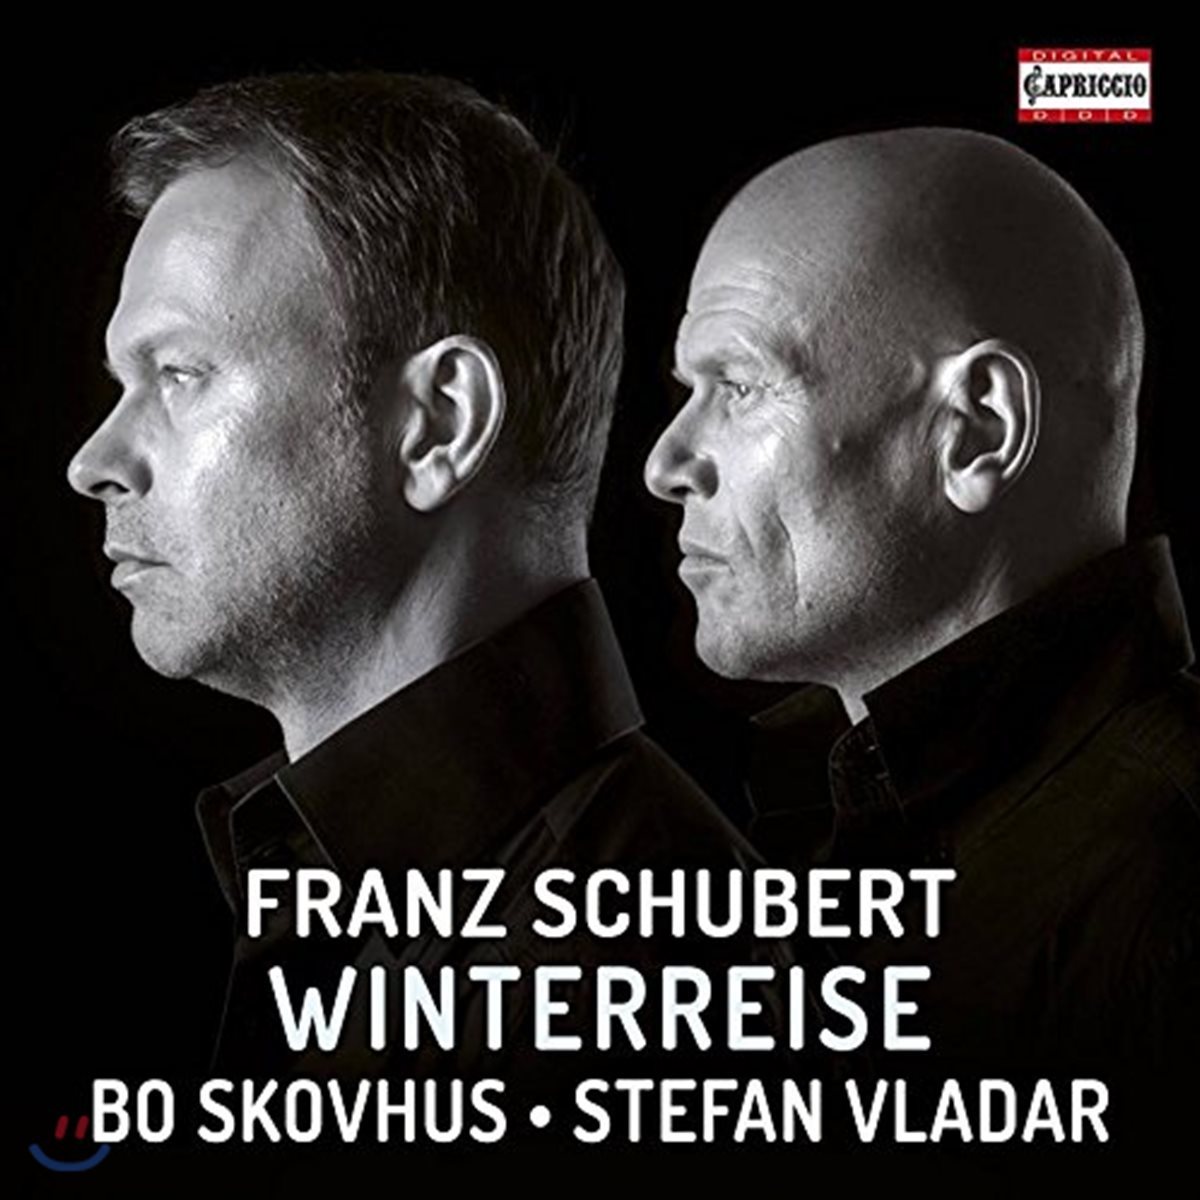 Bo Skovhus / Stefan Vladar 슈베르트: 겨울나그네 (Schubert: Winterreise Op.89 D911)